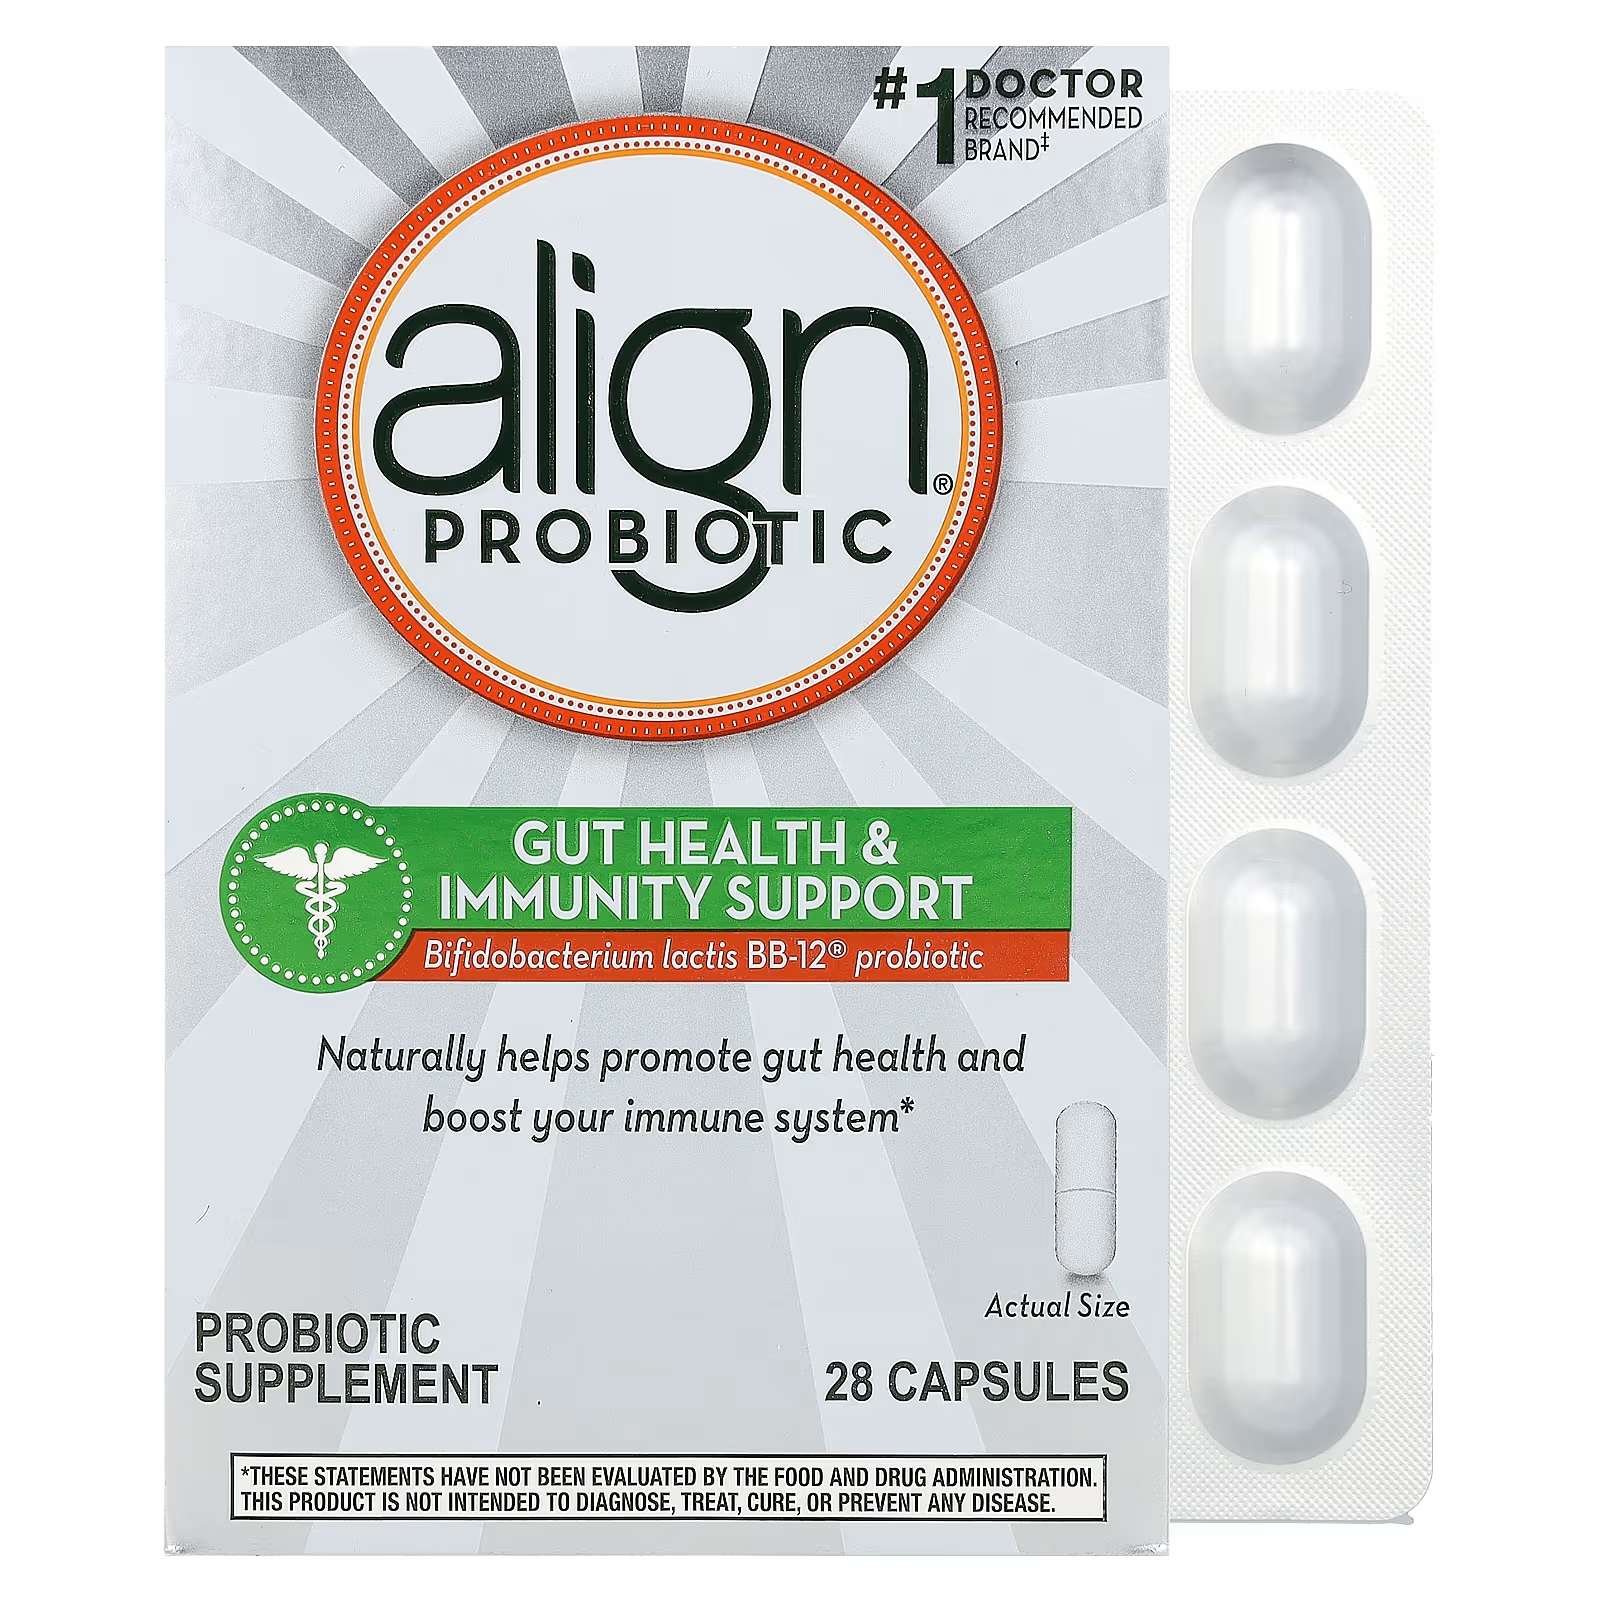 витаминный комплекс для здоровья кишечника и иммунитета orthomol pro basic plus 60 шт Пробиотики Align Probiotics для здоровья кишечника и иммунитета, 28 капсул